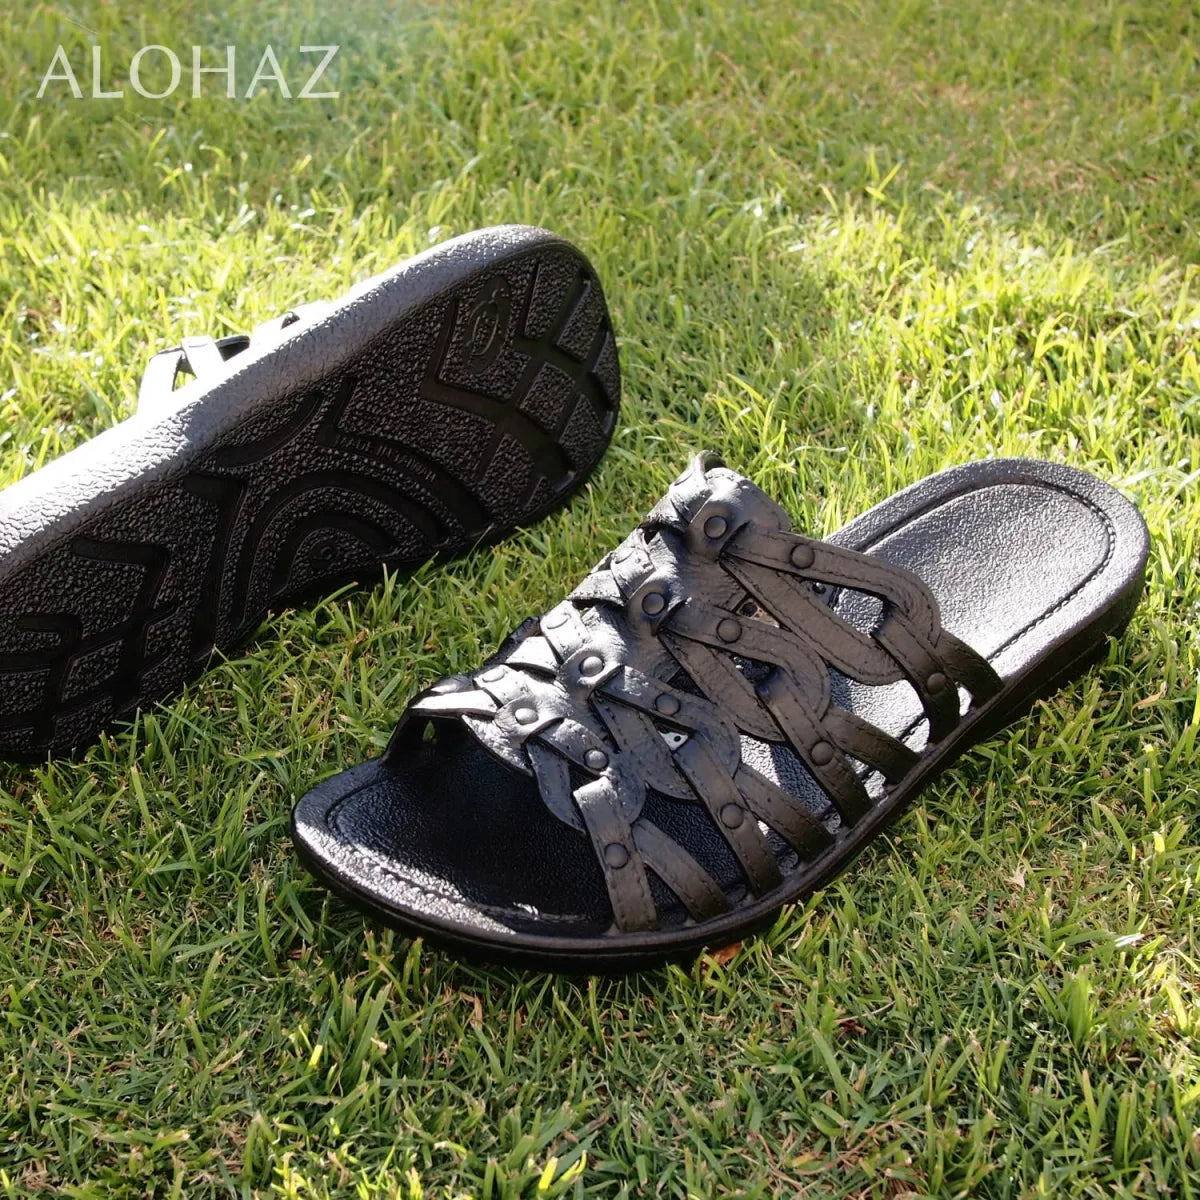 Black tia™ - pali hawaii sandals